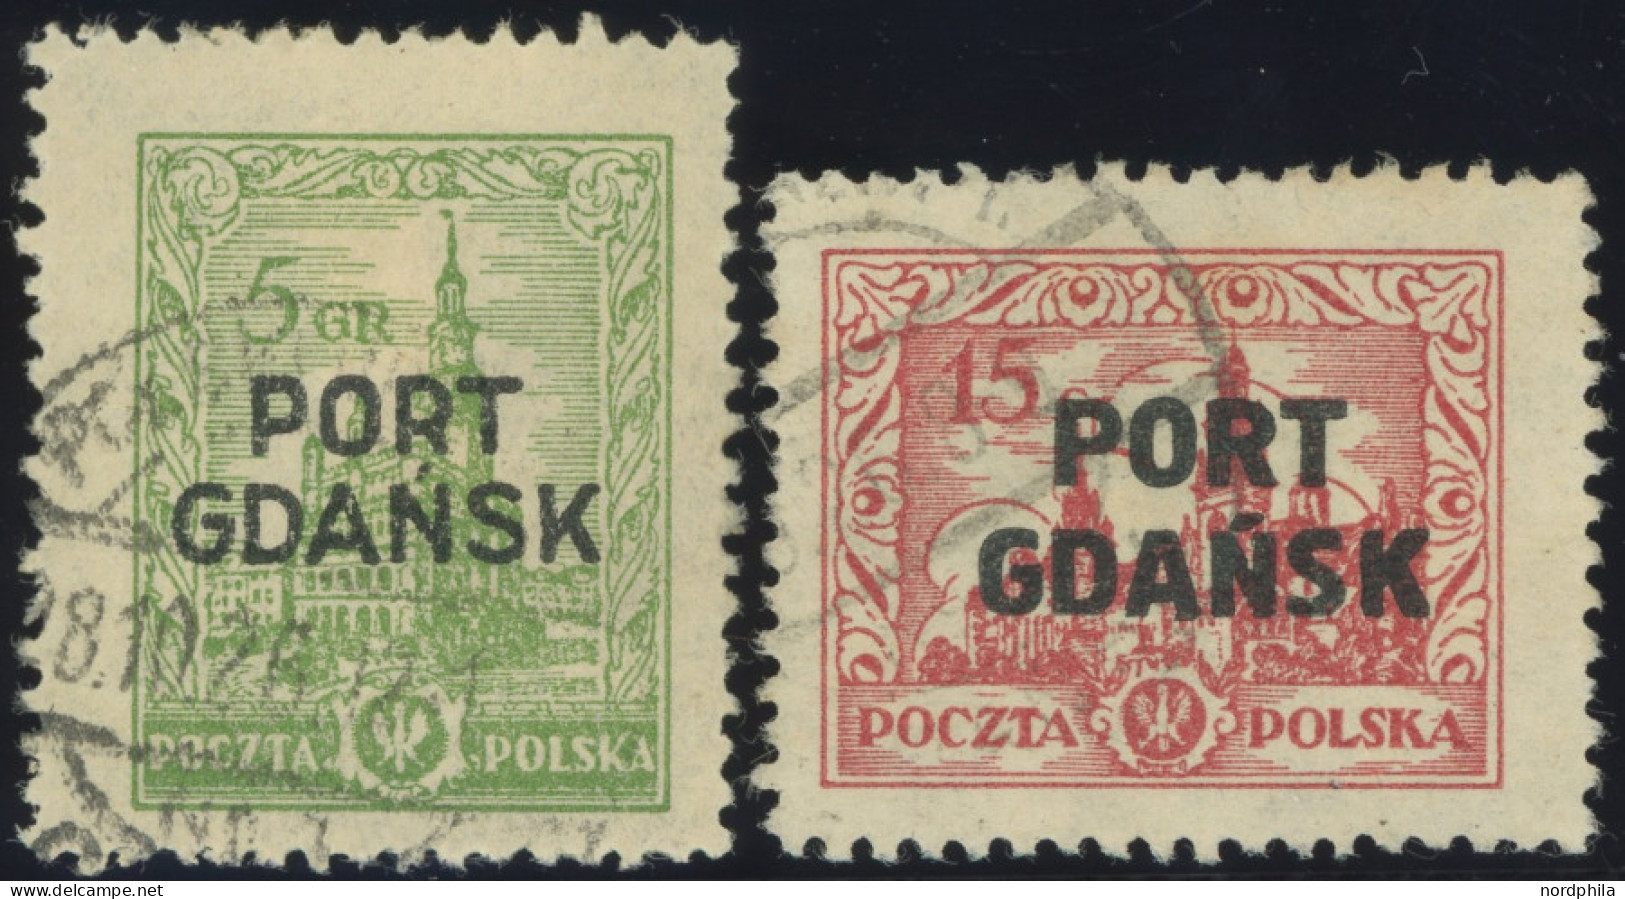 PORT GDANSK 12,14 O, 1926, 5 Gr. Gelbgrün Und 15 Gr. Lebhaftkarminrot, üblich Gezähnt Pracht, Mi. 120.- - Port Gdansk